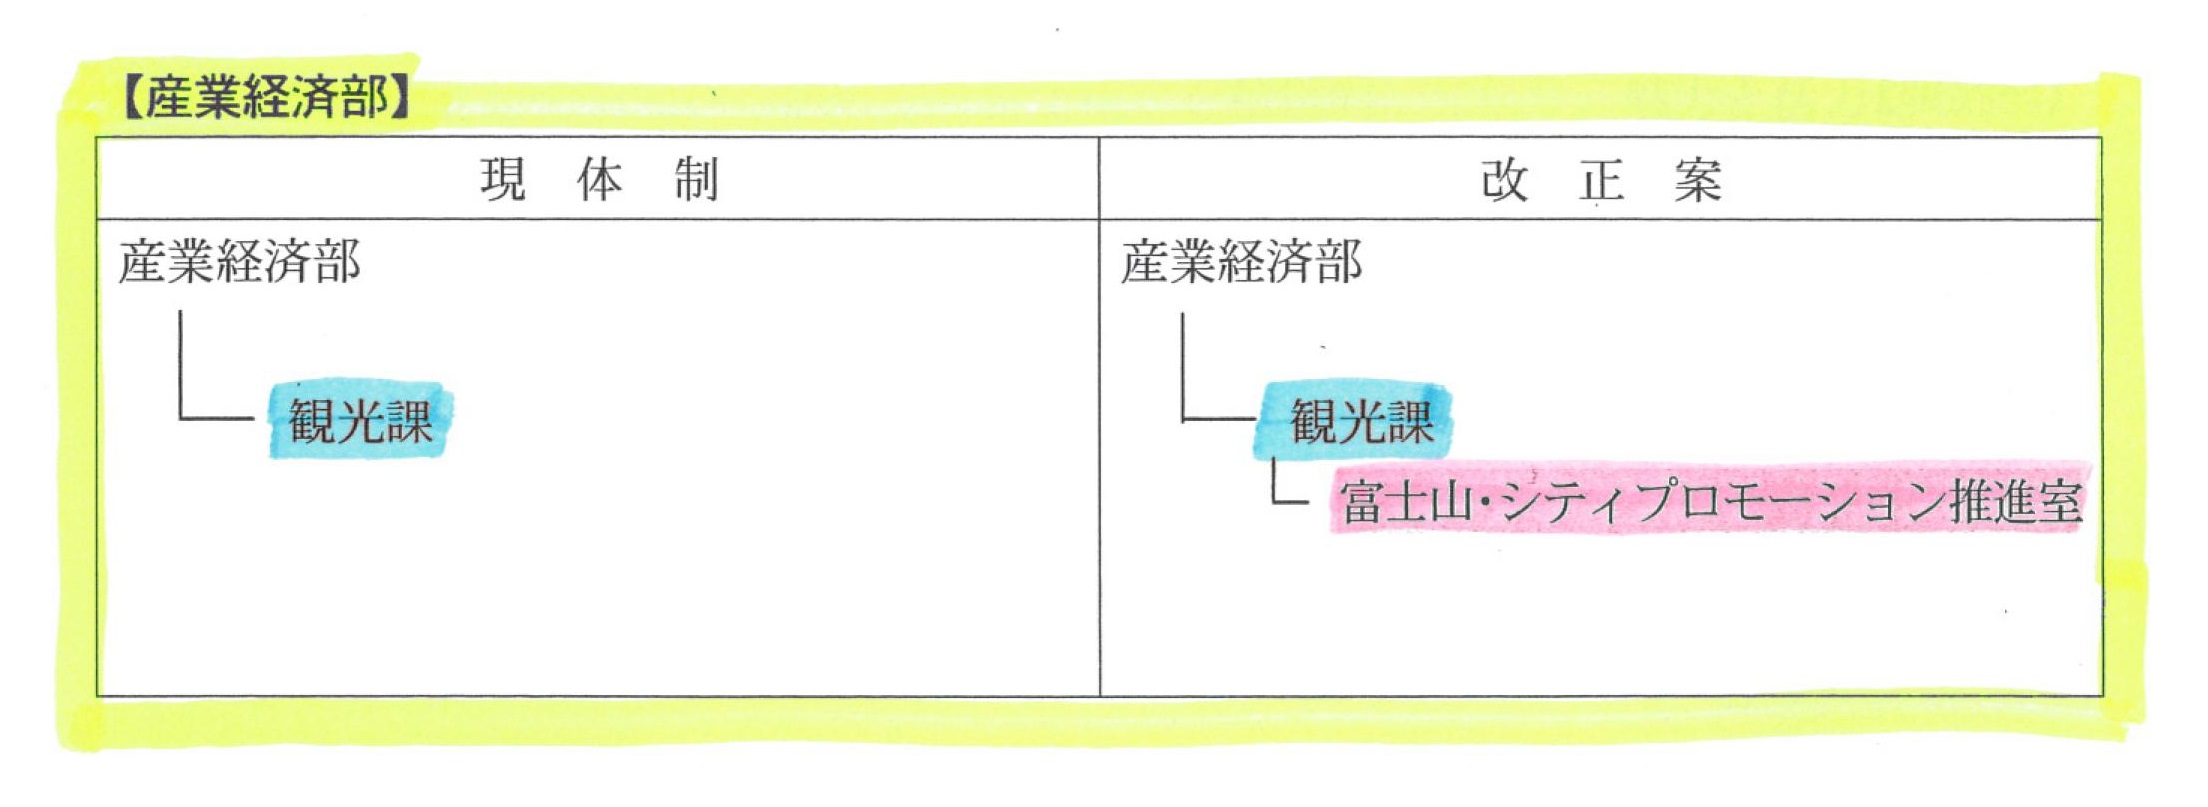 「小長井色」を反映した富士市の26年度組織改正案_f0141310_7162535.jpg